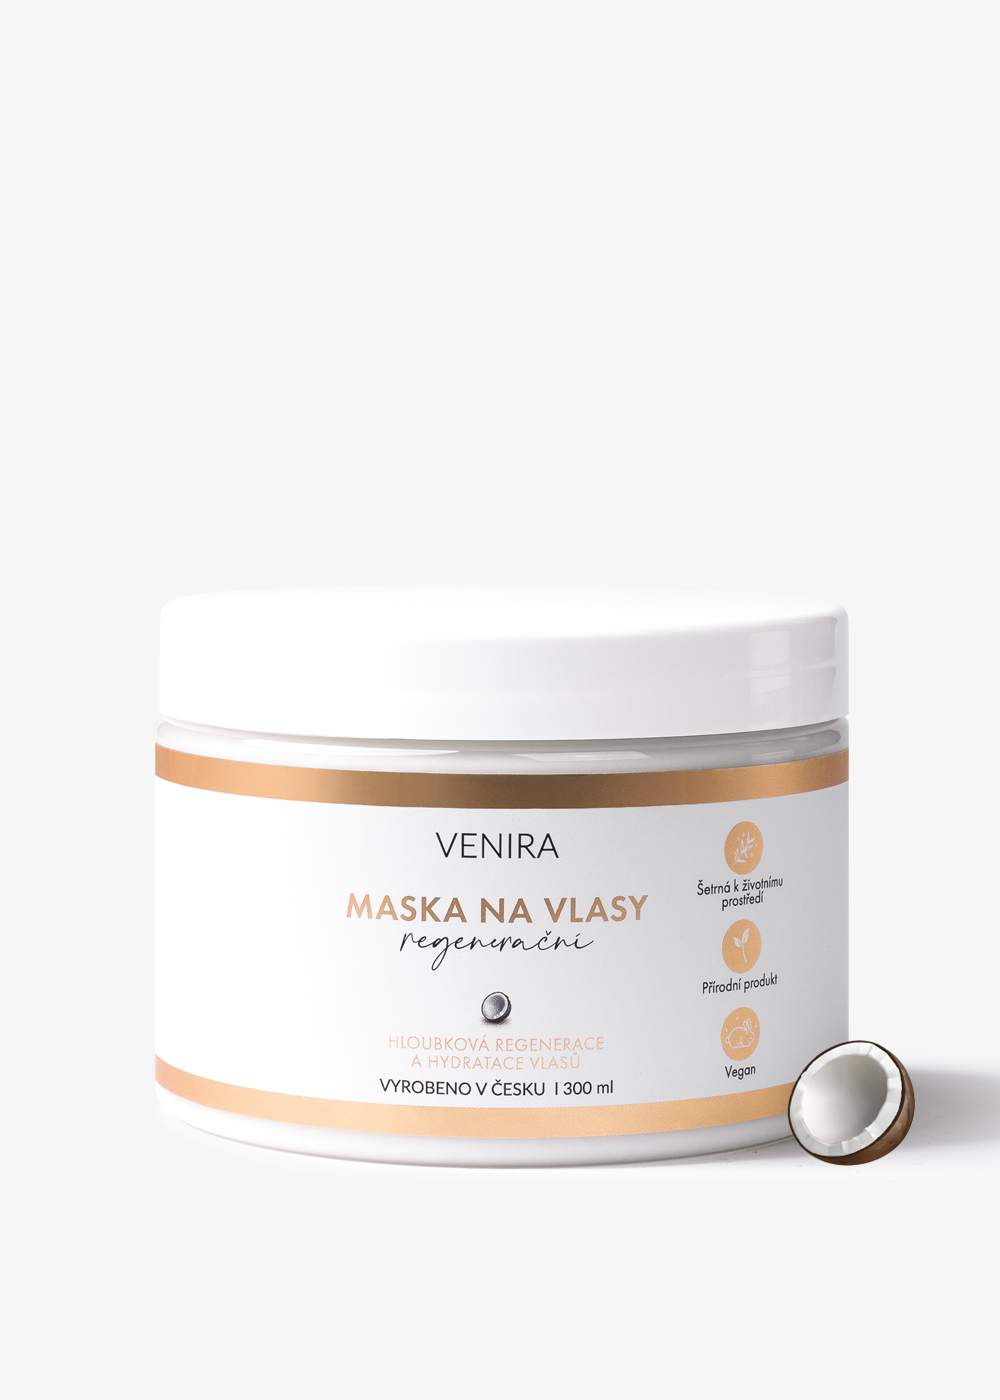 E-shop VENIRA regeneračná maska na vlasy, kokos, 300 ml kokos, 300 ml